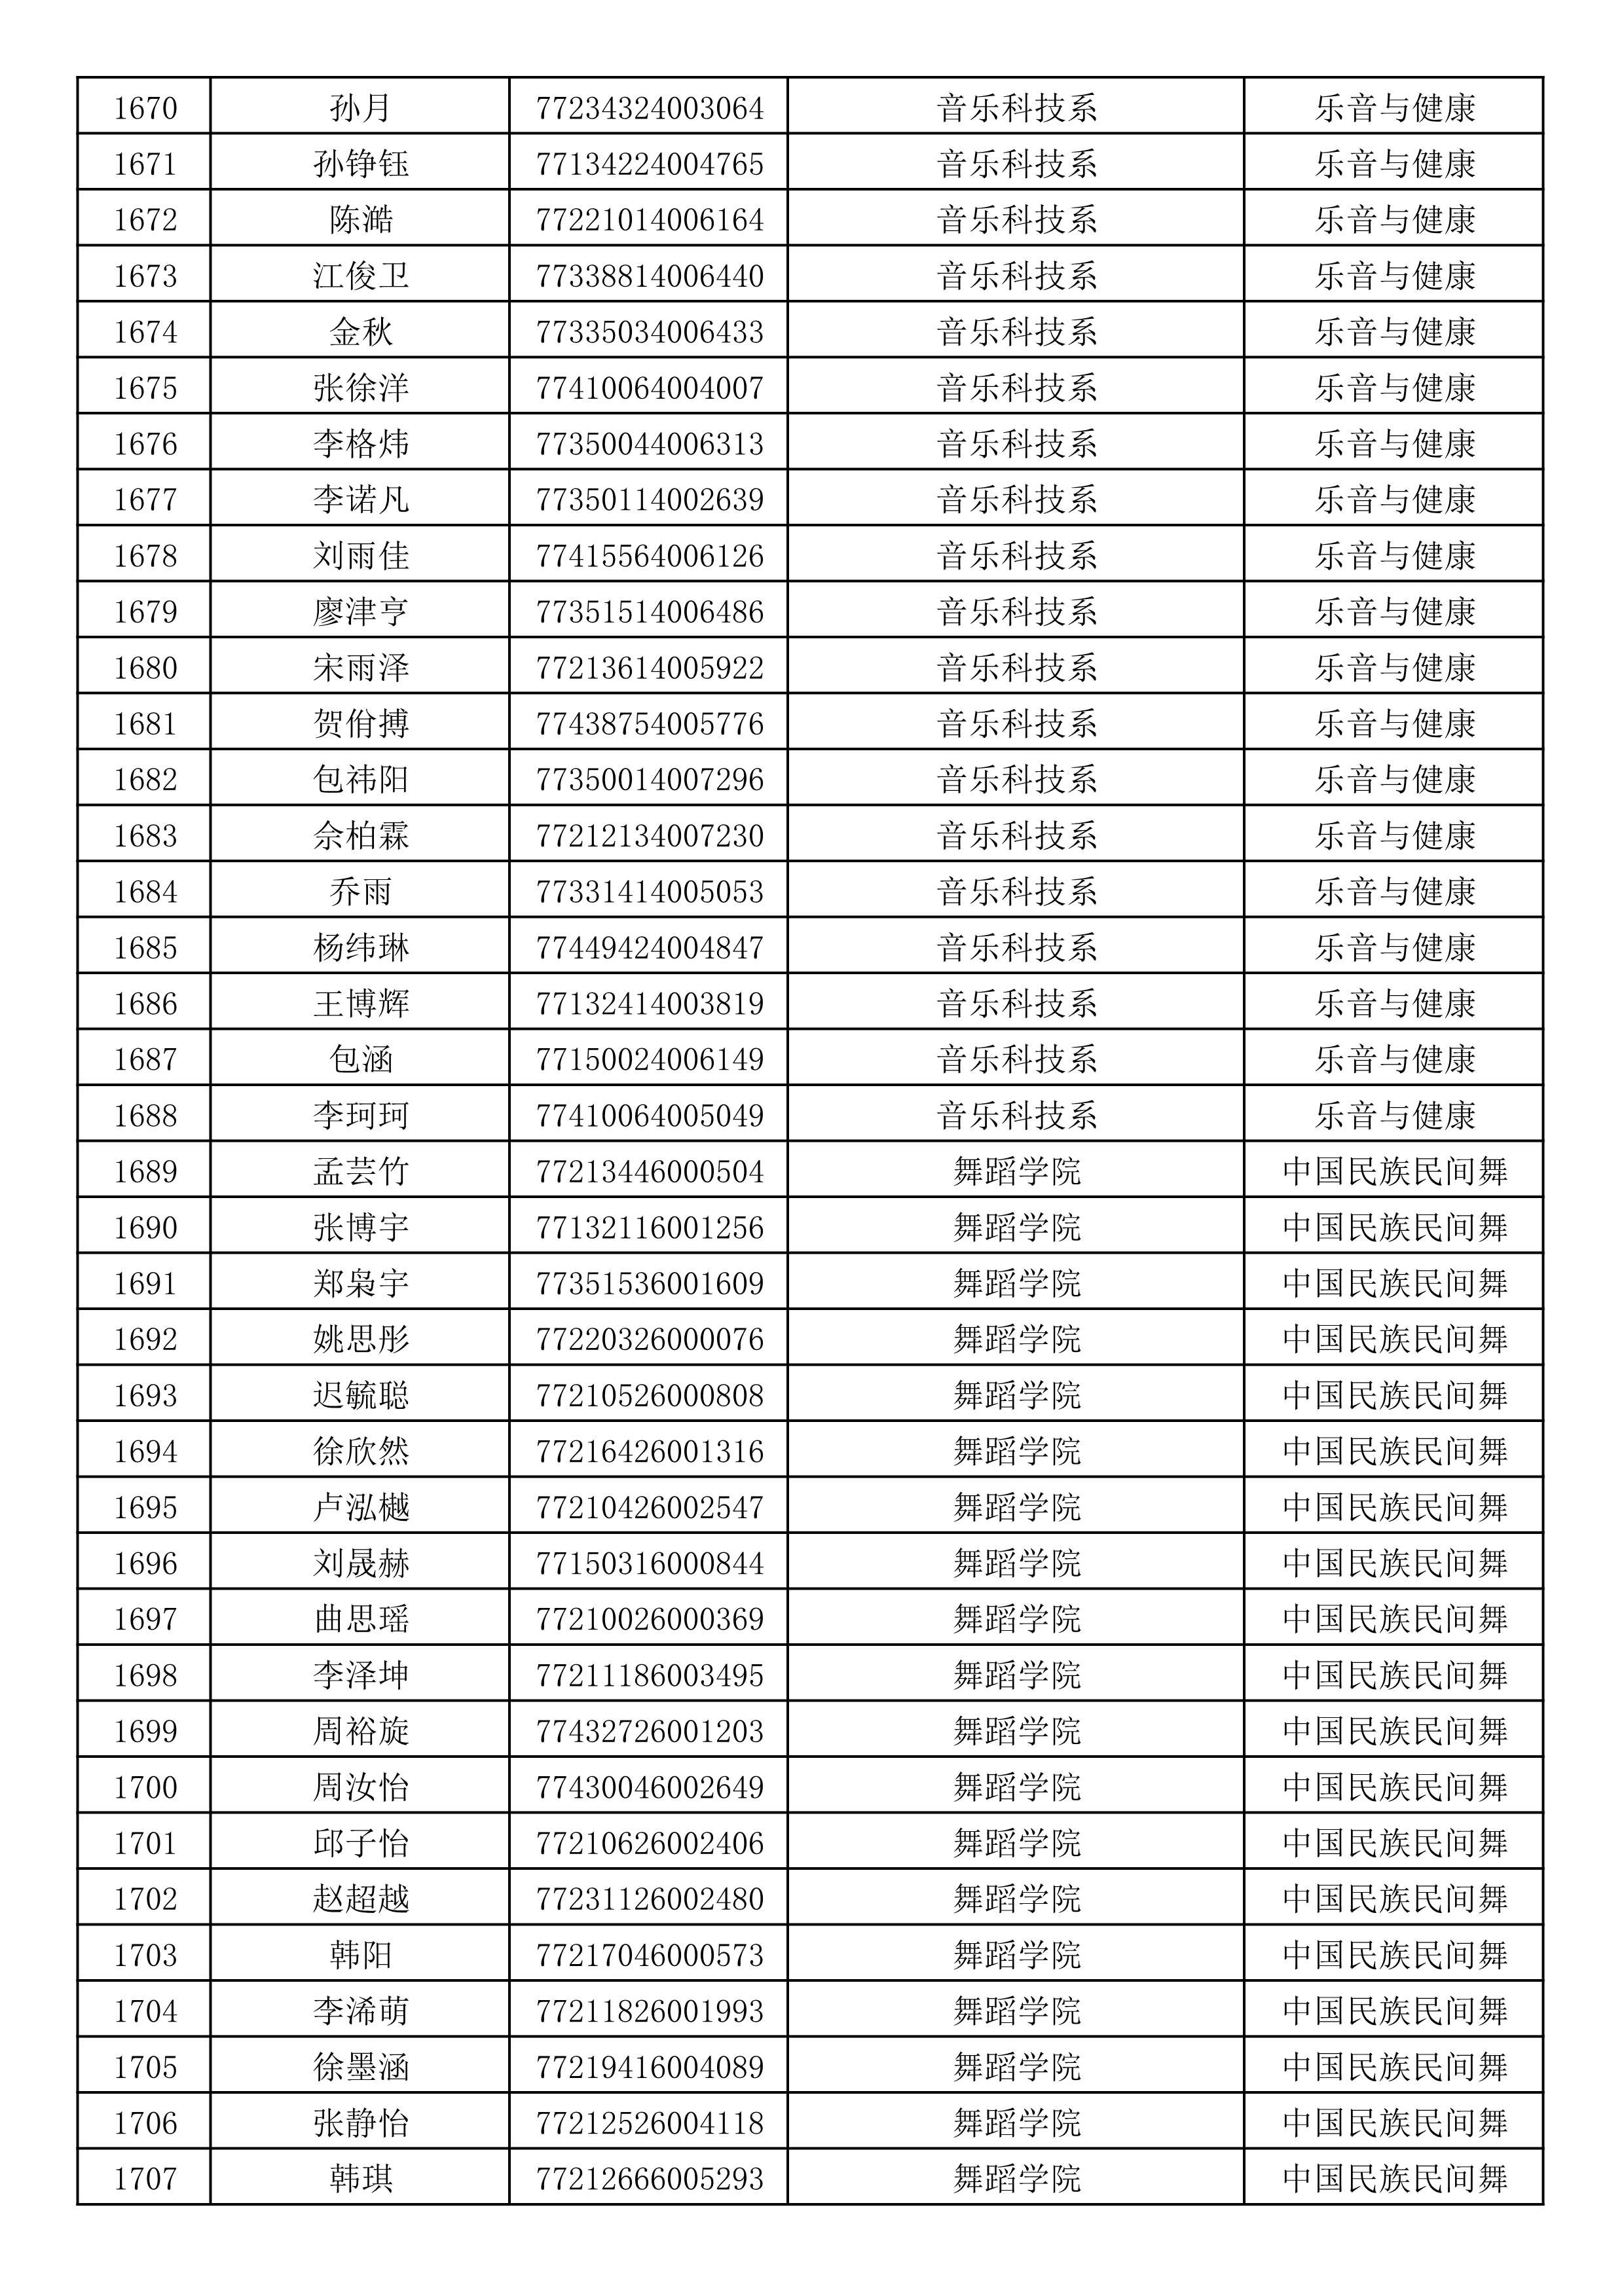 沈阳音乐学院2019年本科招生考试初试合格名单_45.jpg